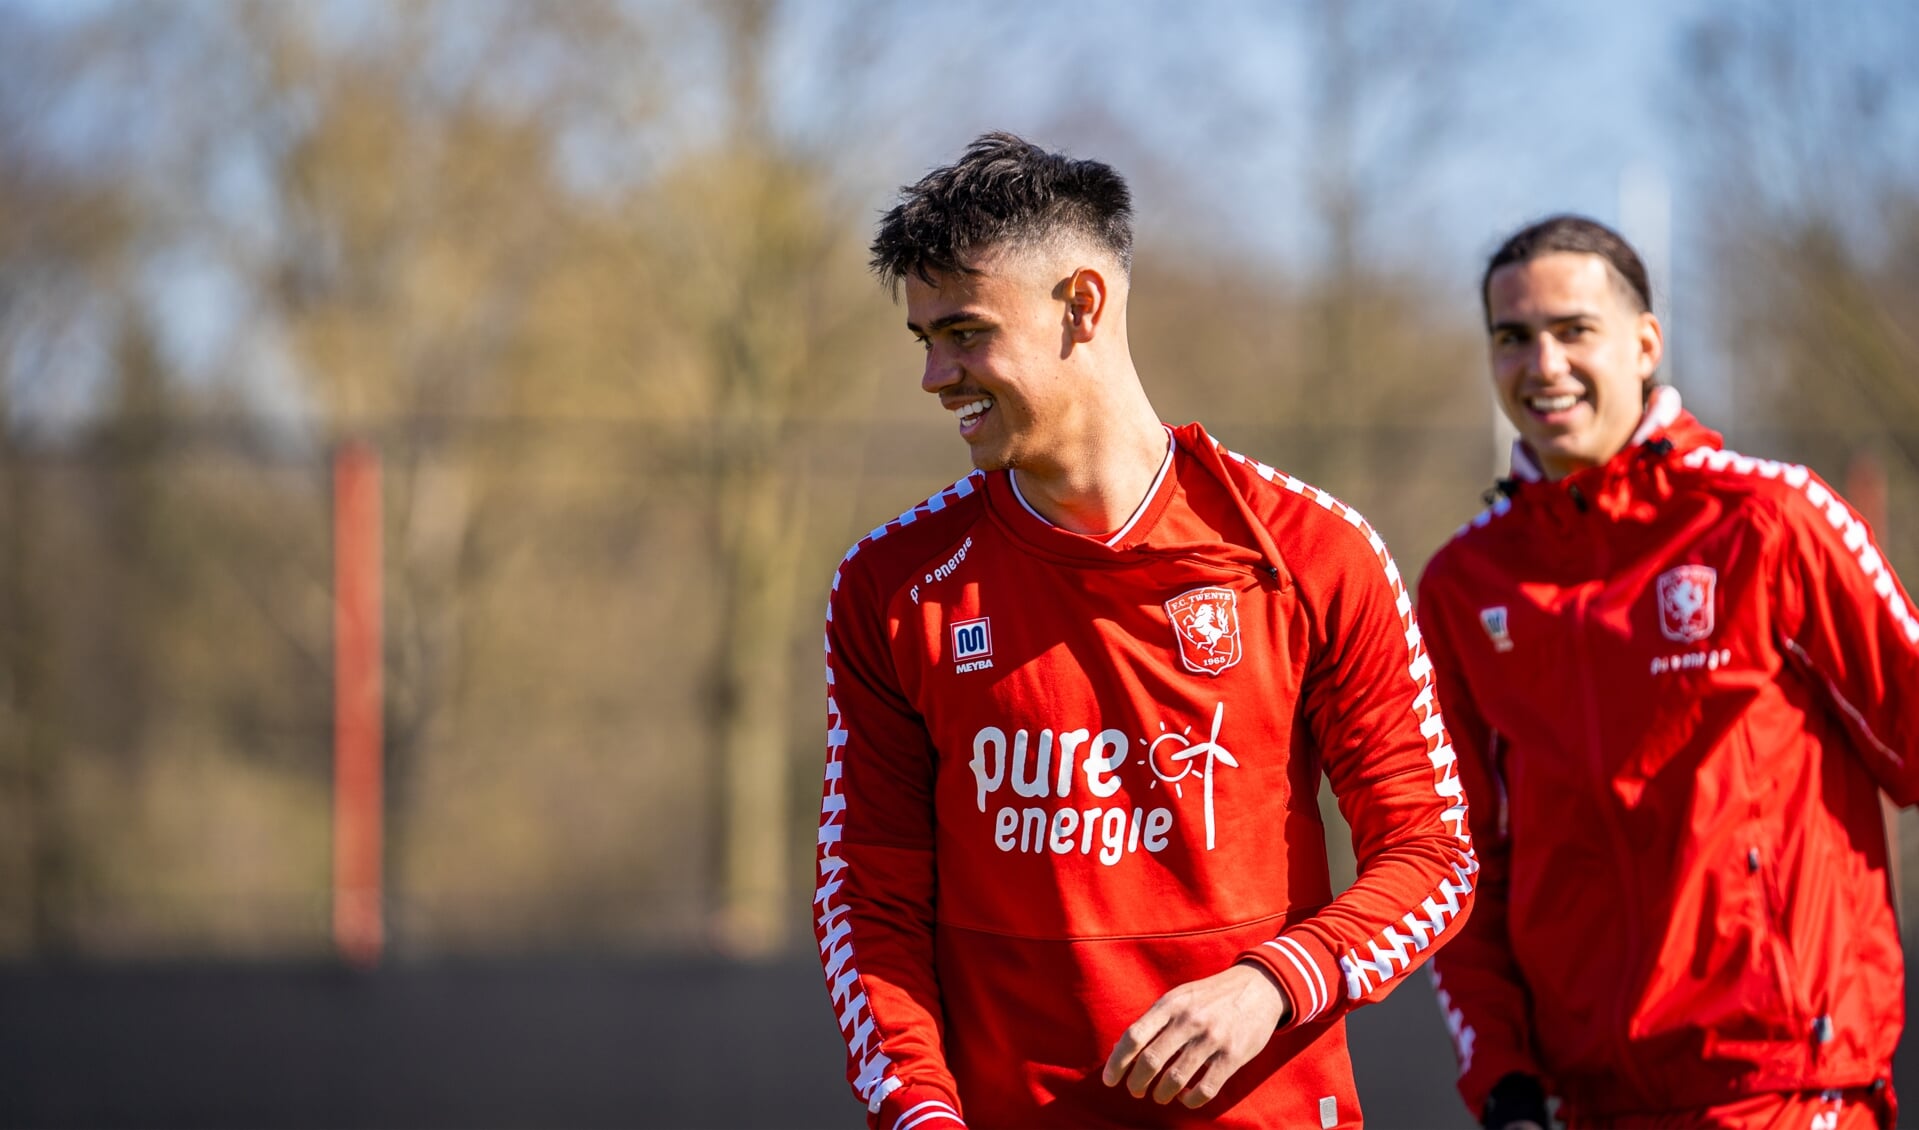 Mees Hilgers met op de achtergrond Ramiz Zerrouki. (Foto: FC Twente Media/Stef Heerink)